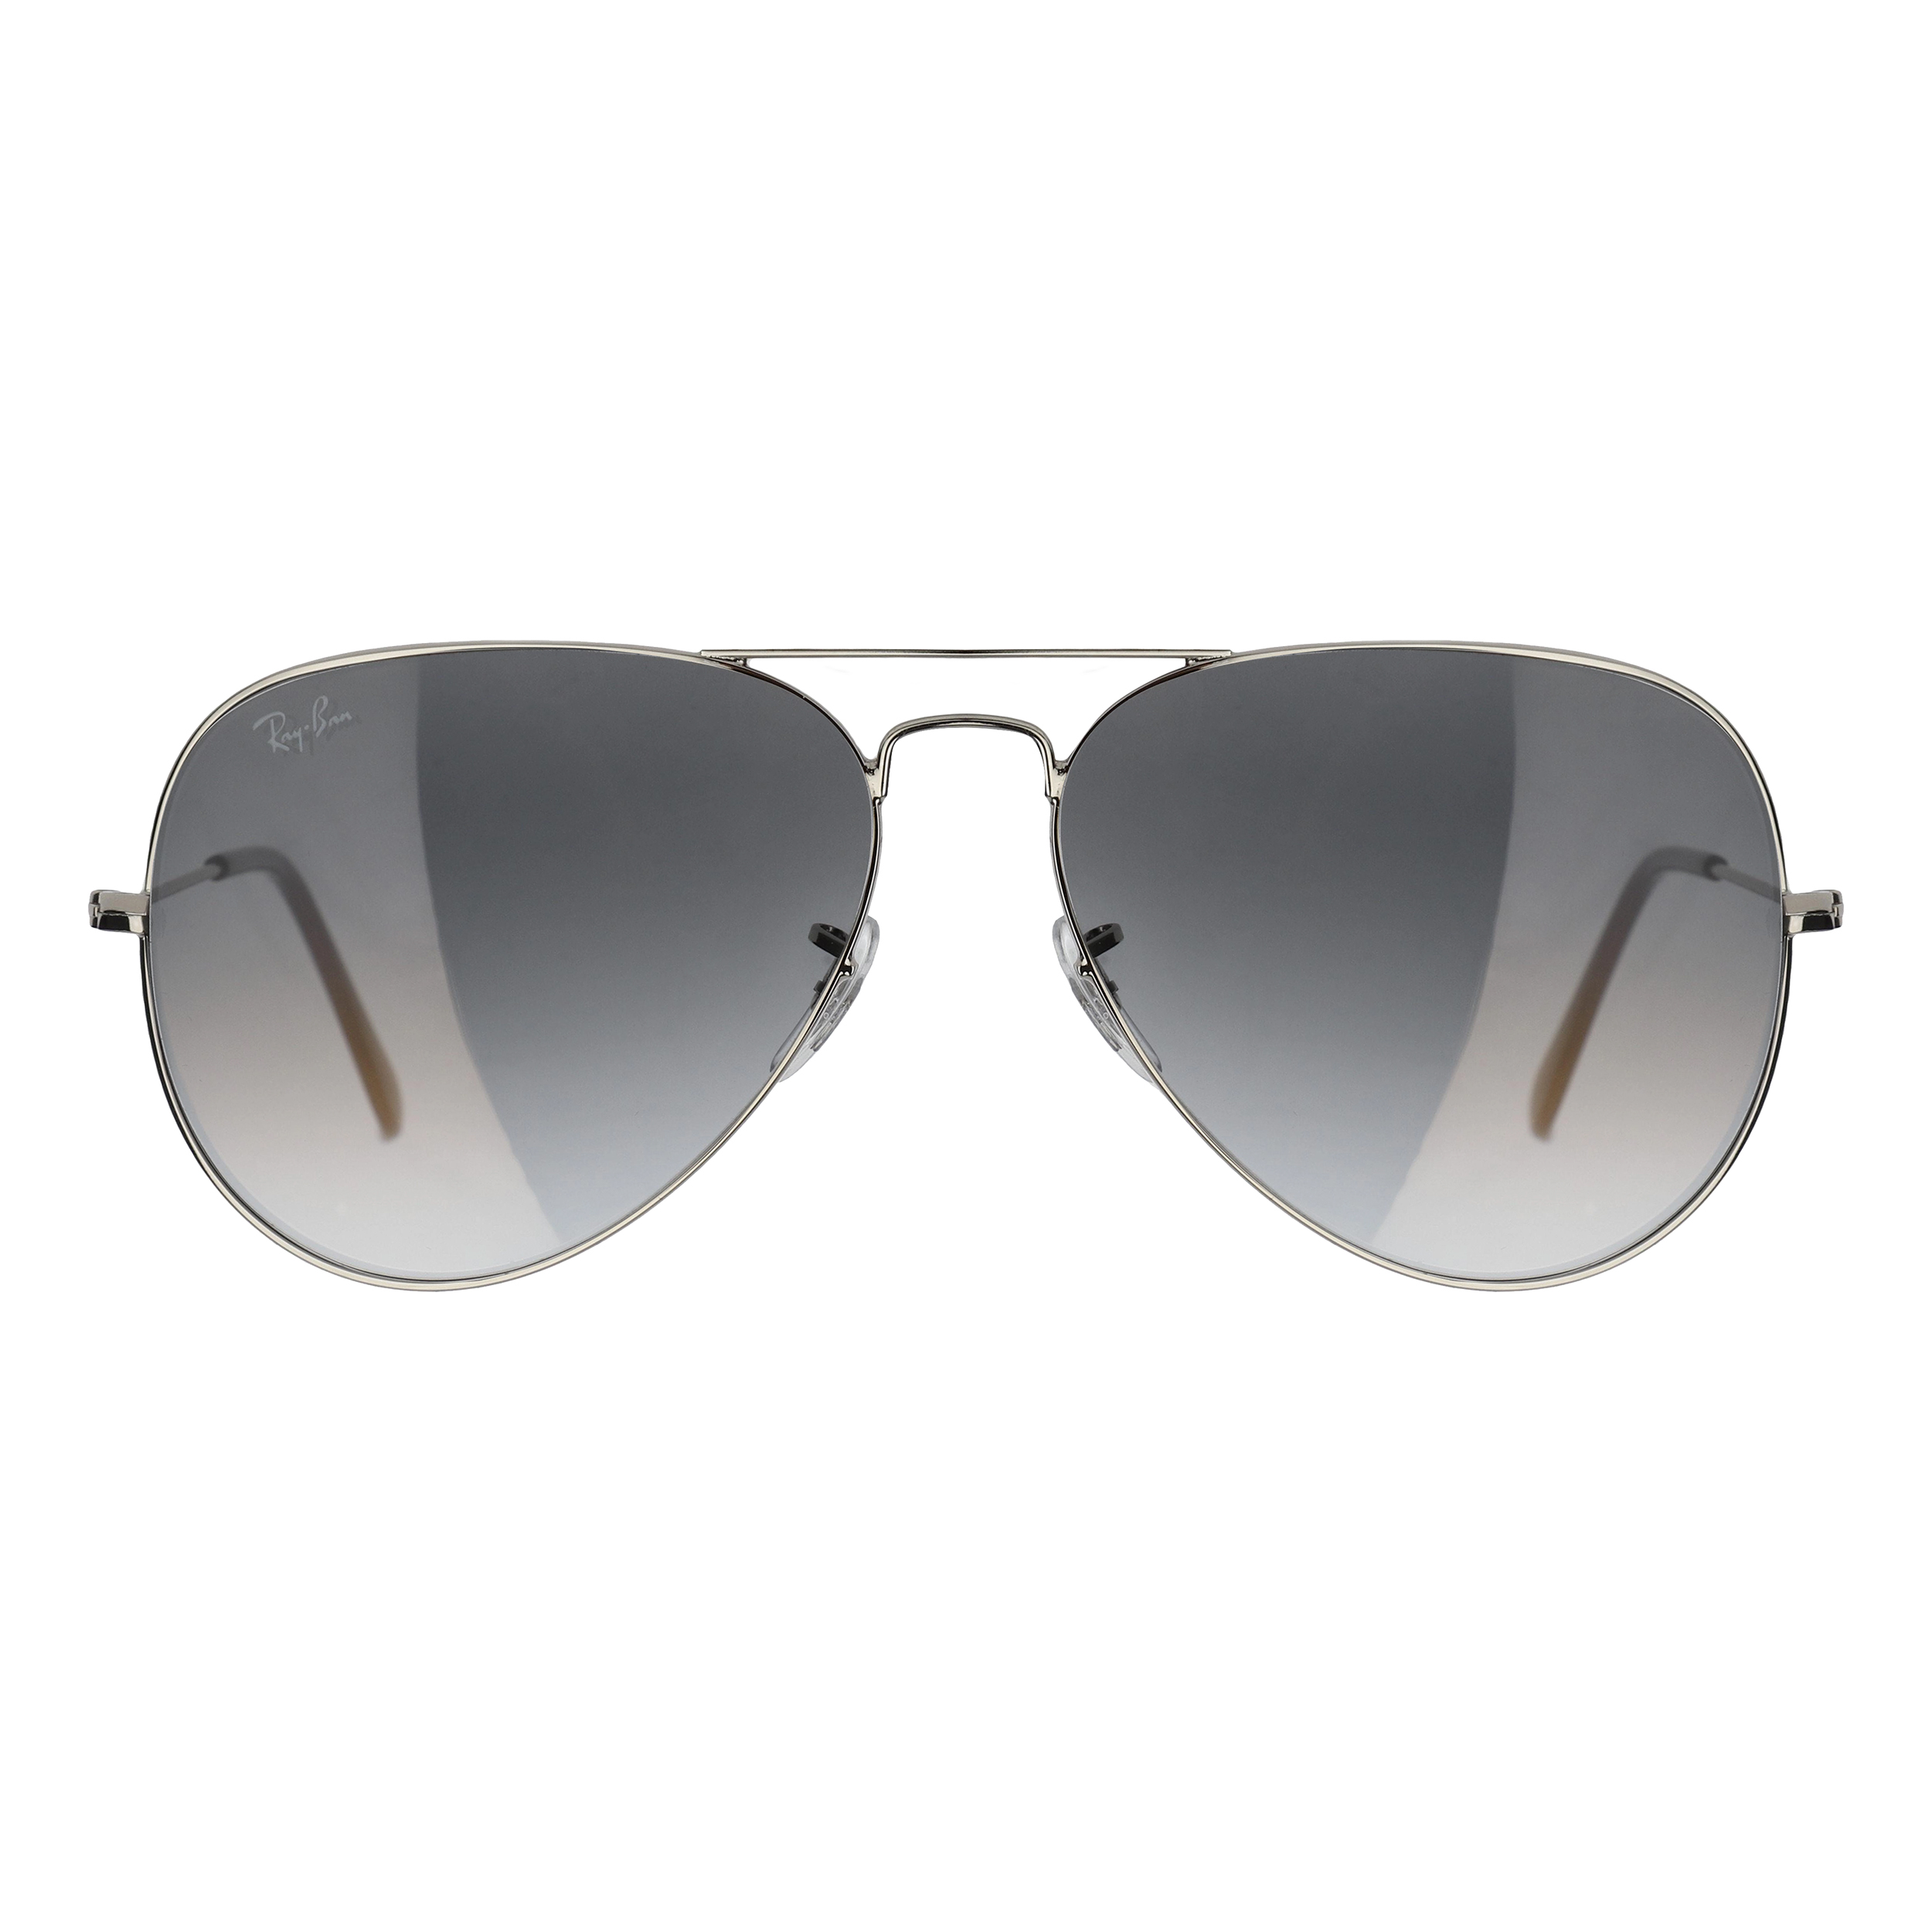 عینک آفتابی ری بن مدل RB3026-003/32